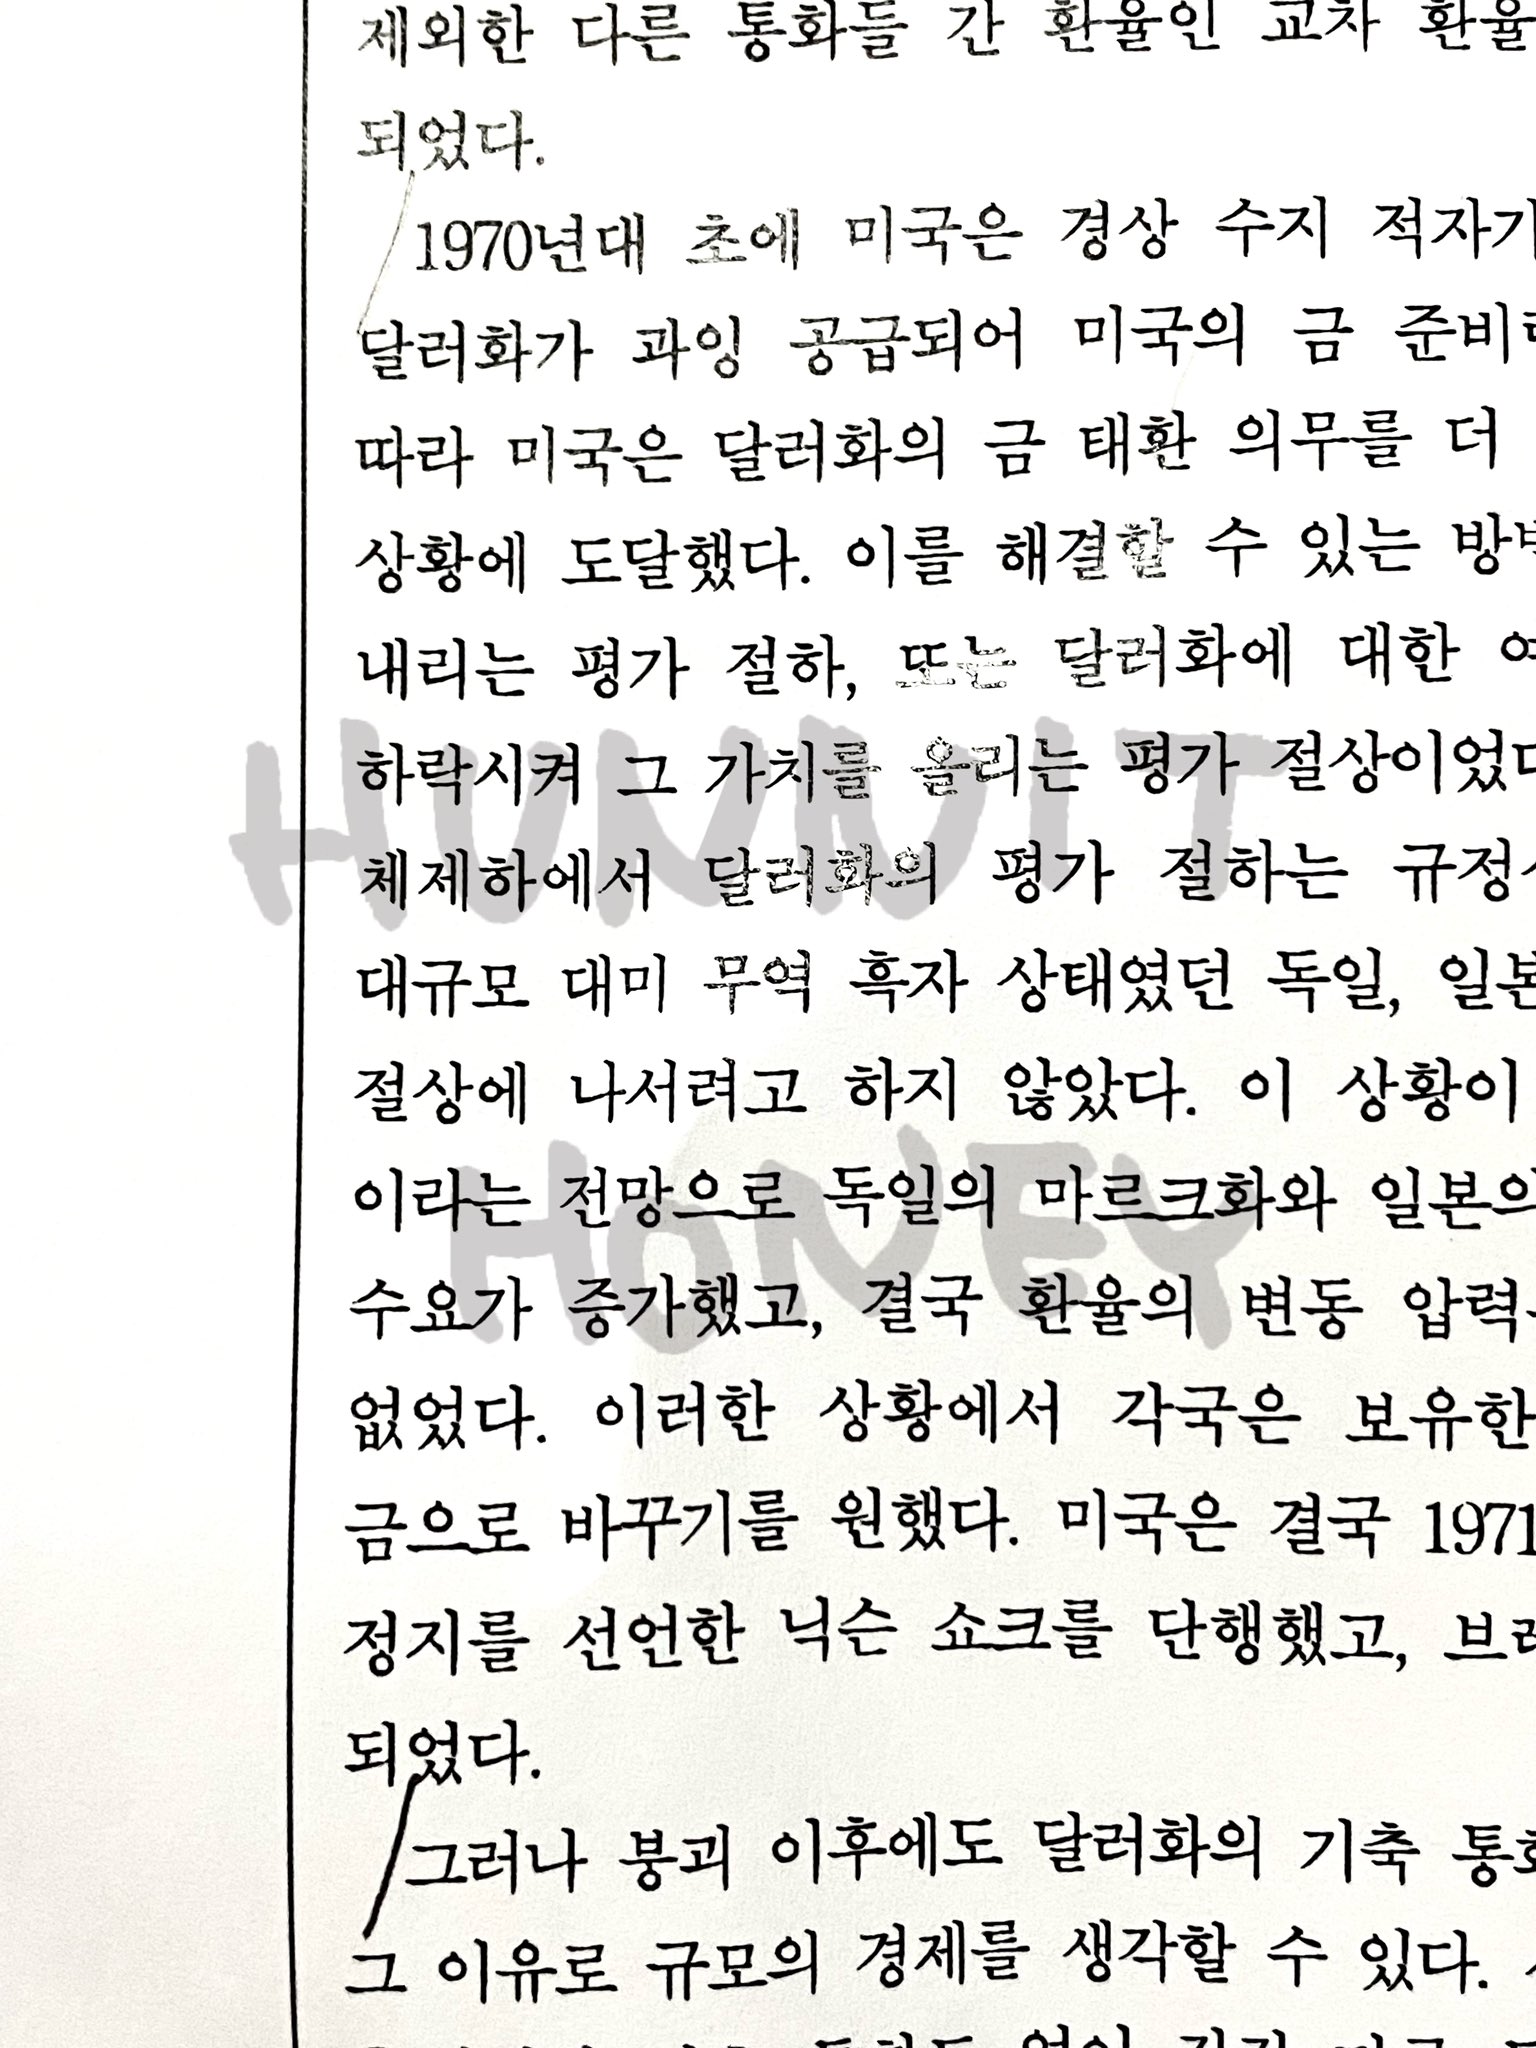 [잡담] 수능국어1등급인 아이돌이 팬싸에서 즉석으로 수능문제하나풀어줌 | 인스티즈